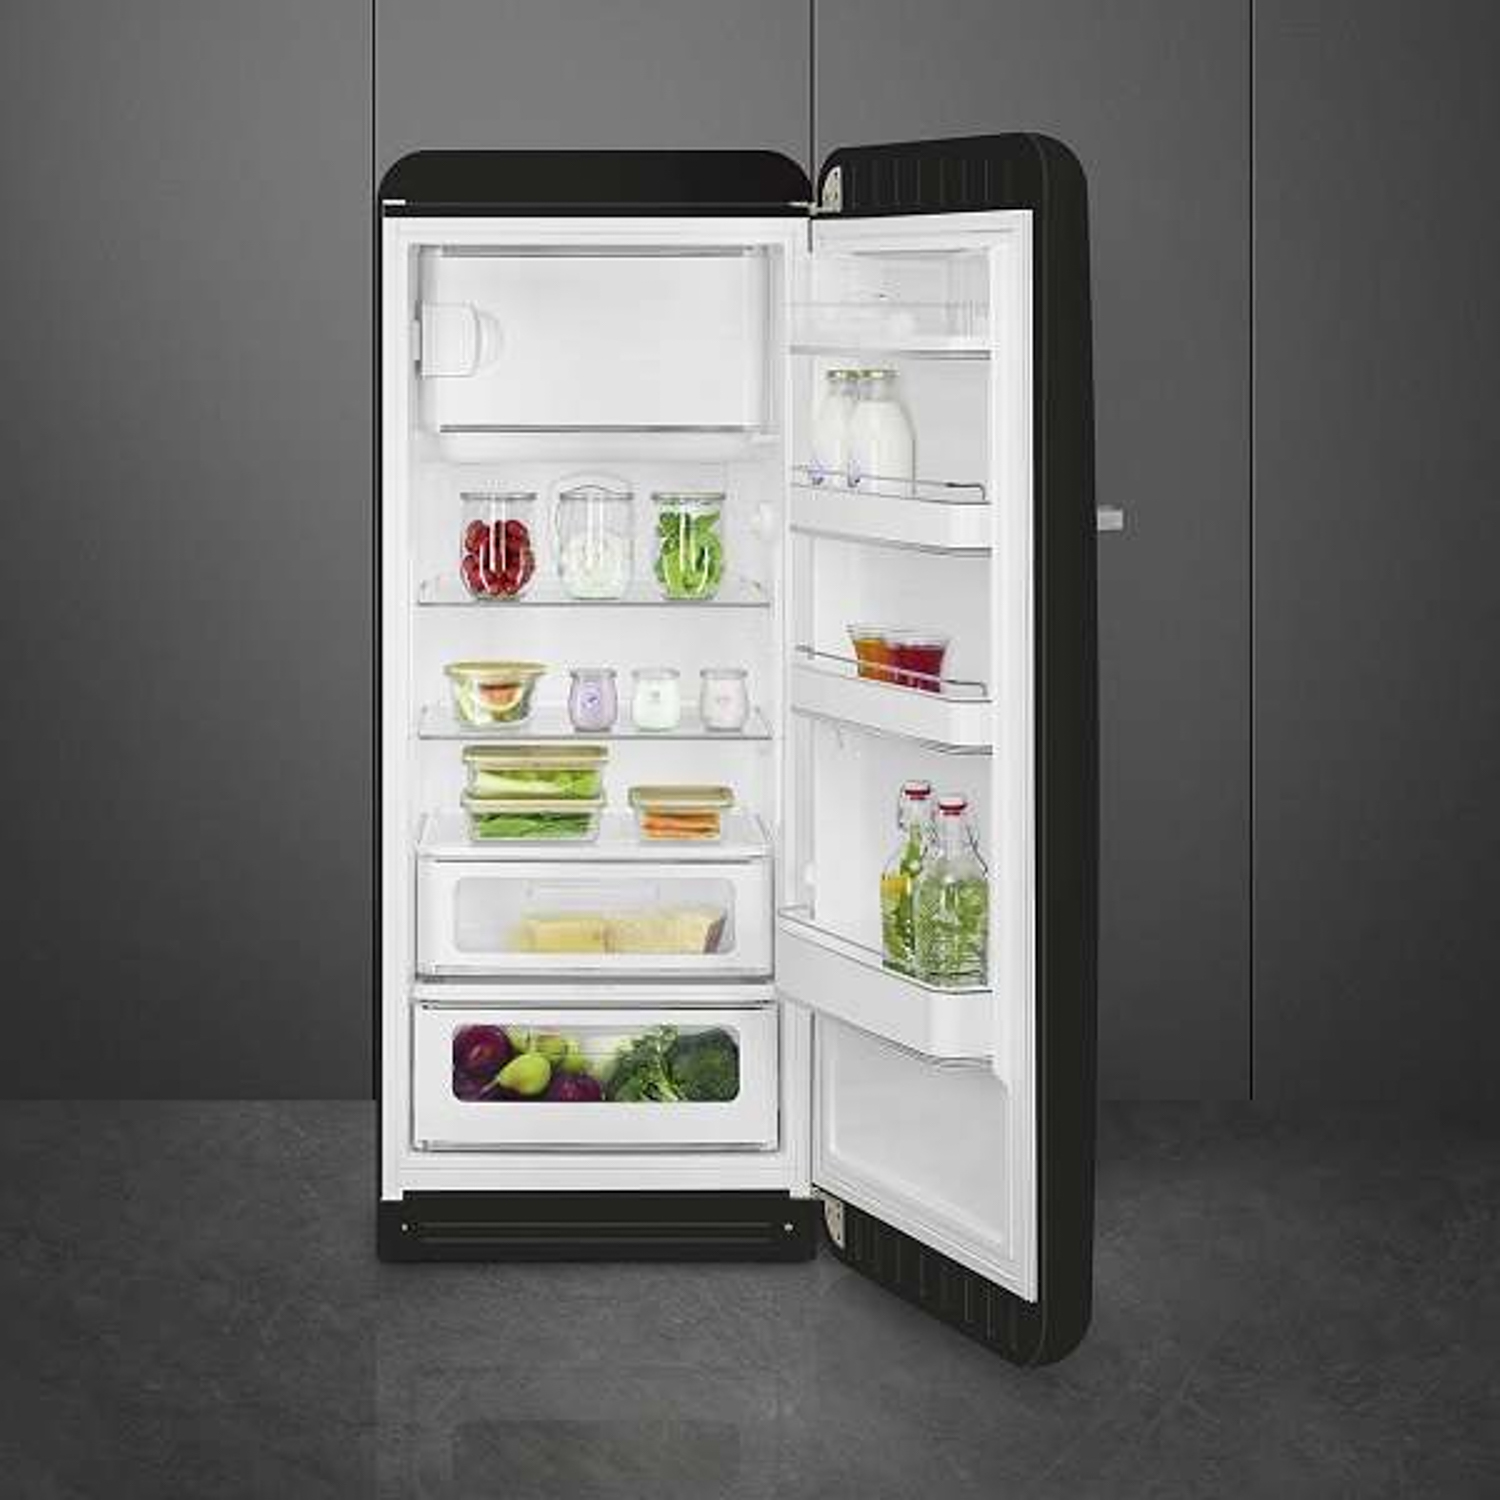 Tủ lạnh SMEG, cửa đơn, độc lập, 50’S STYLE FAB28RBL3 535.14.611 sở hữu thiết kế nhỏ gọn, hiện đại 